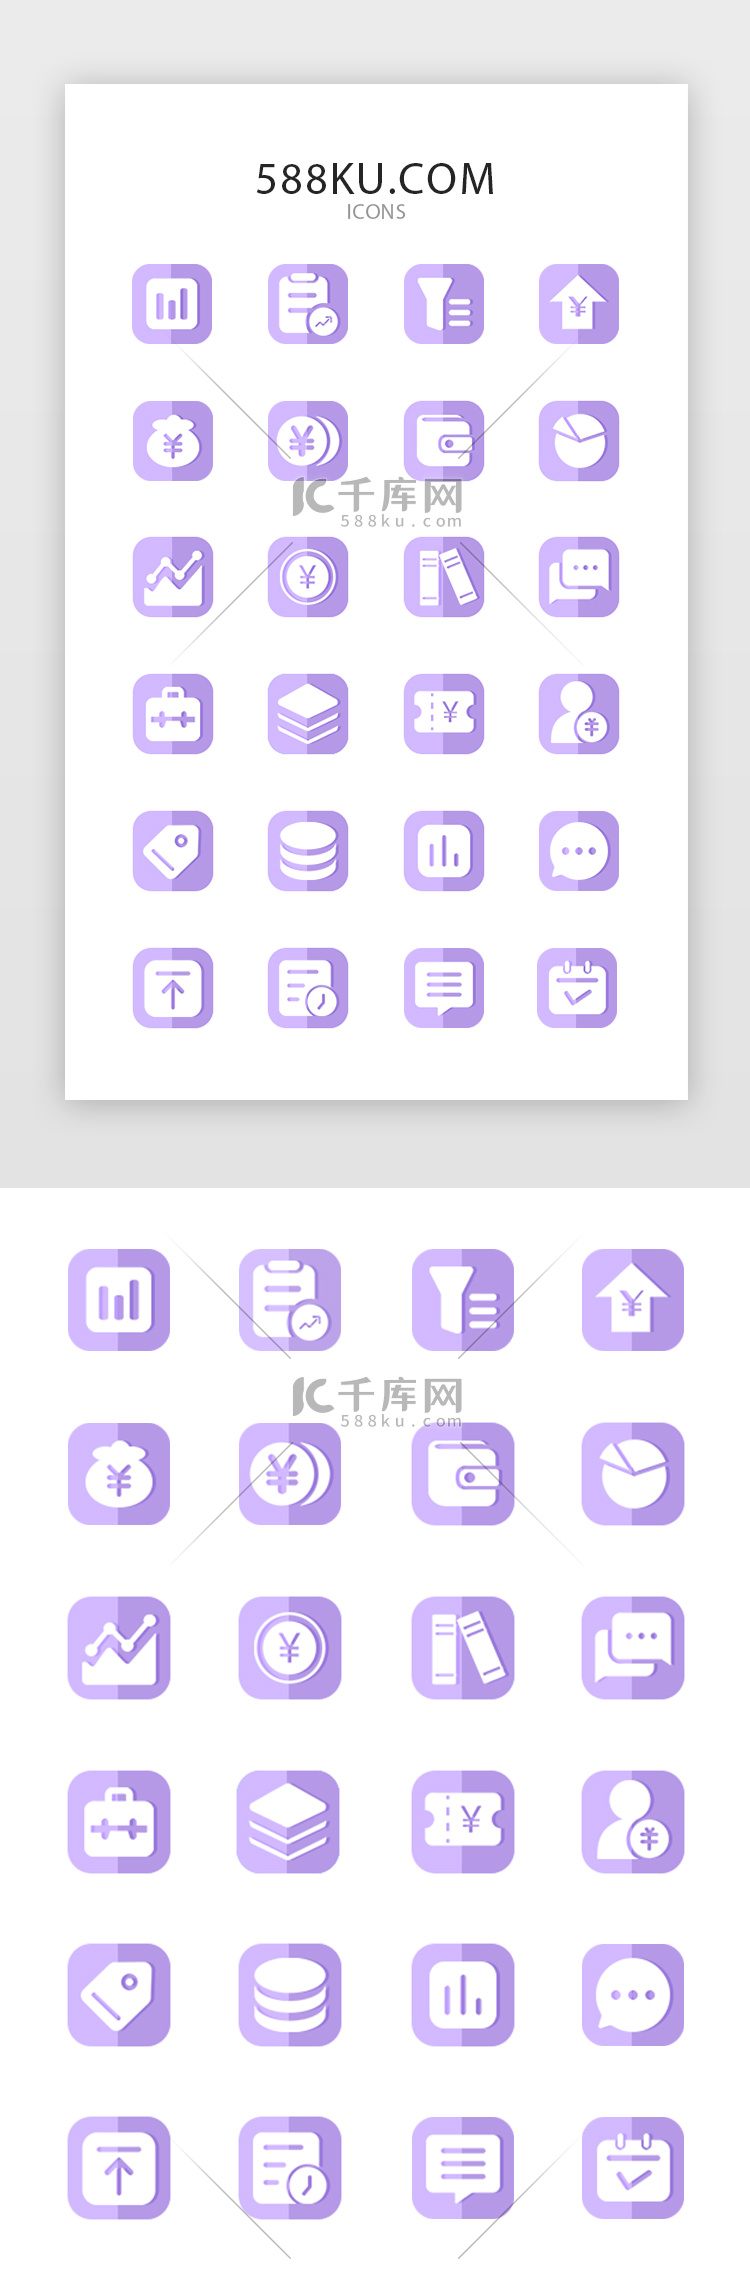 紫色系金融数据APP常用图标icon